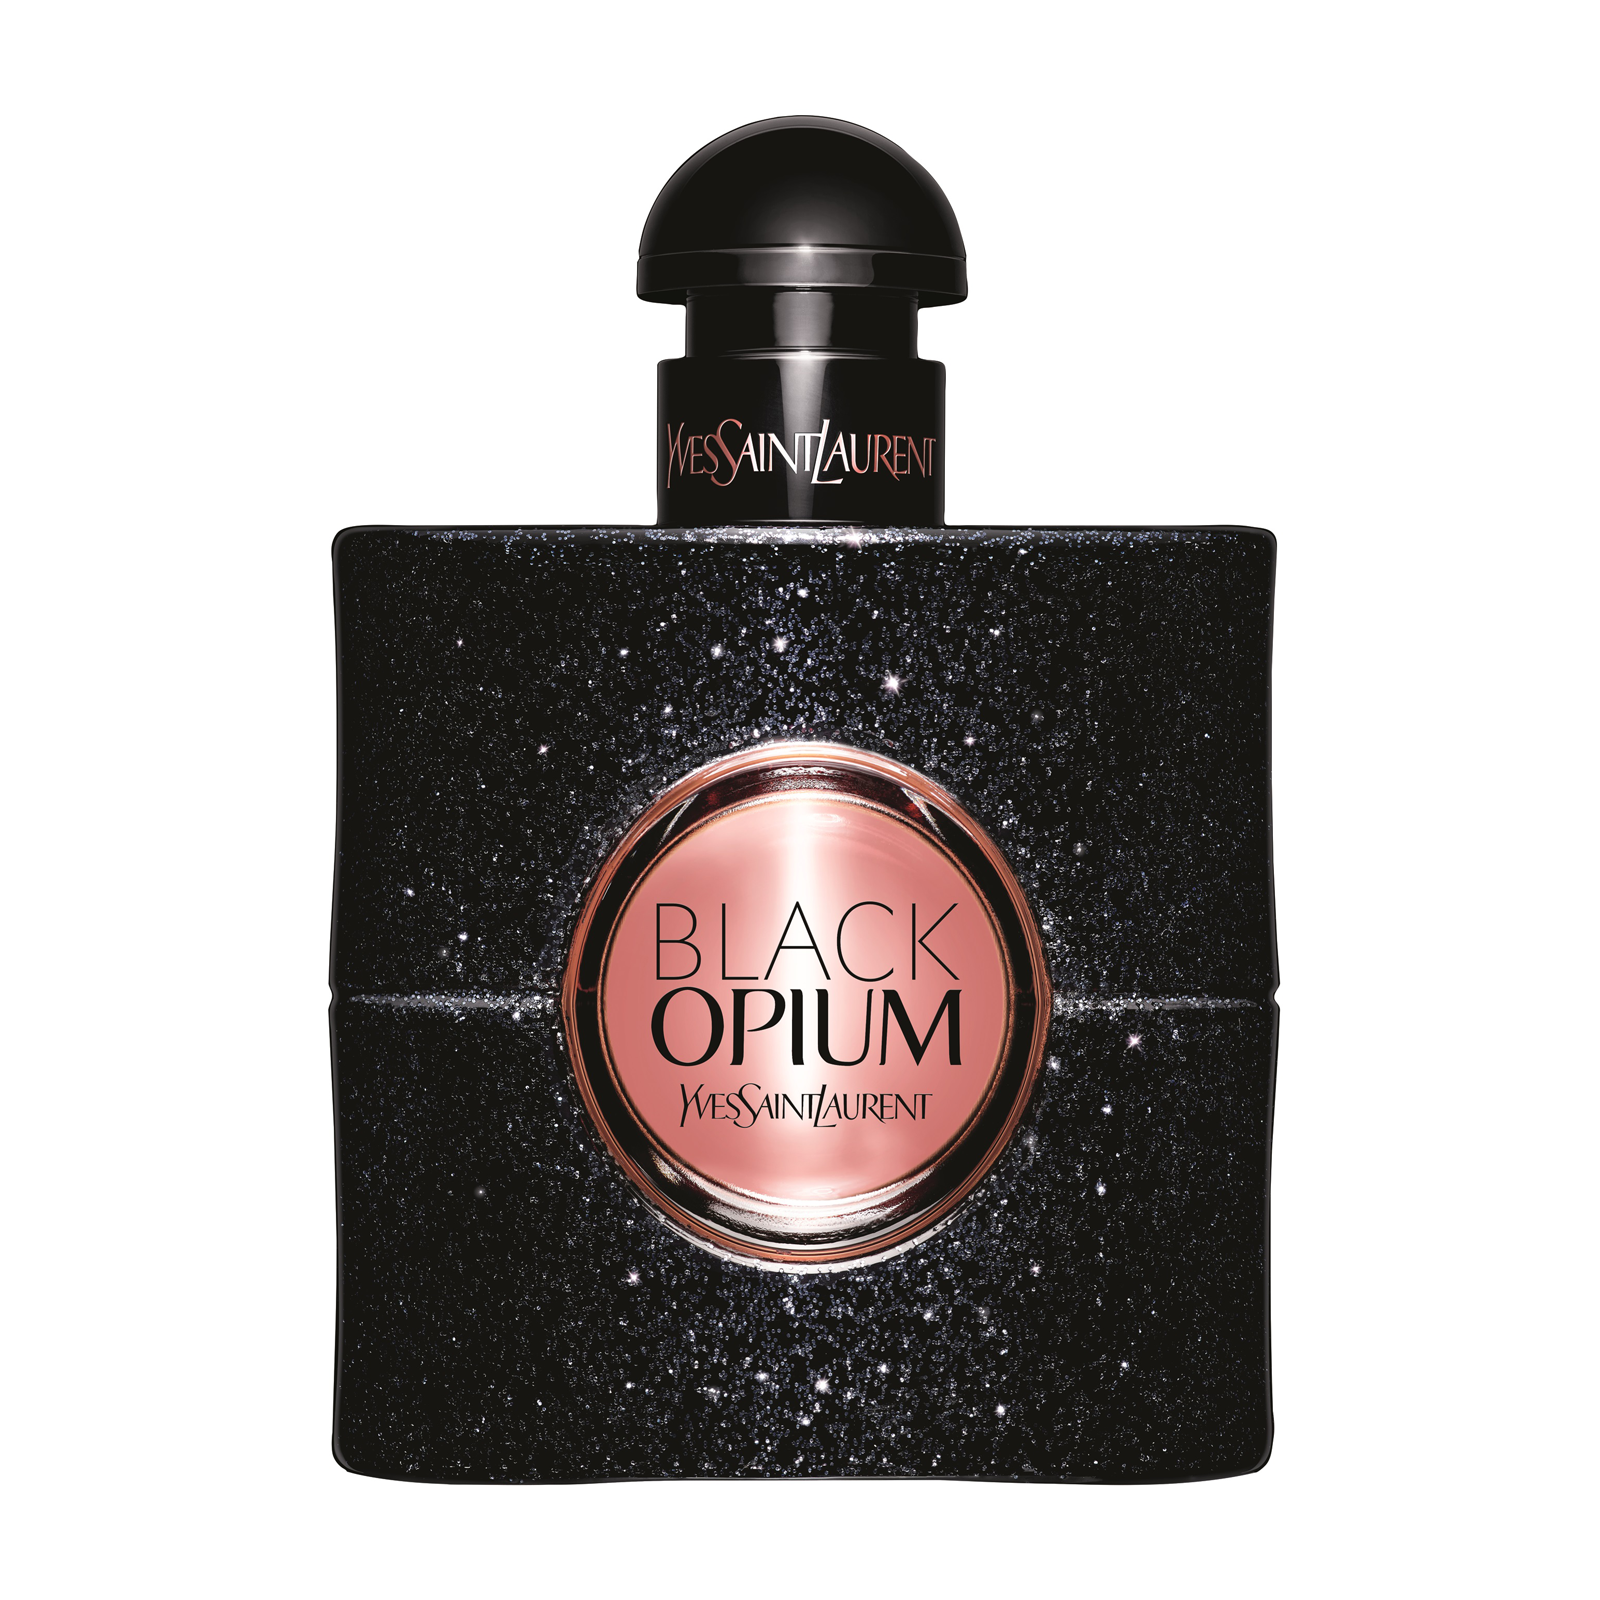 Yves Saint Laurent / Black Opium - Eau de Parfum 90 ml - ShopMania